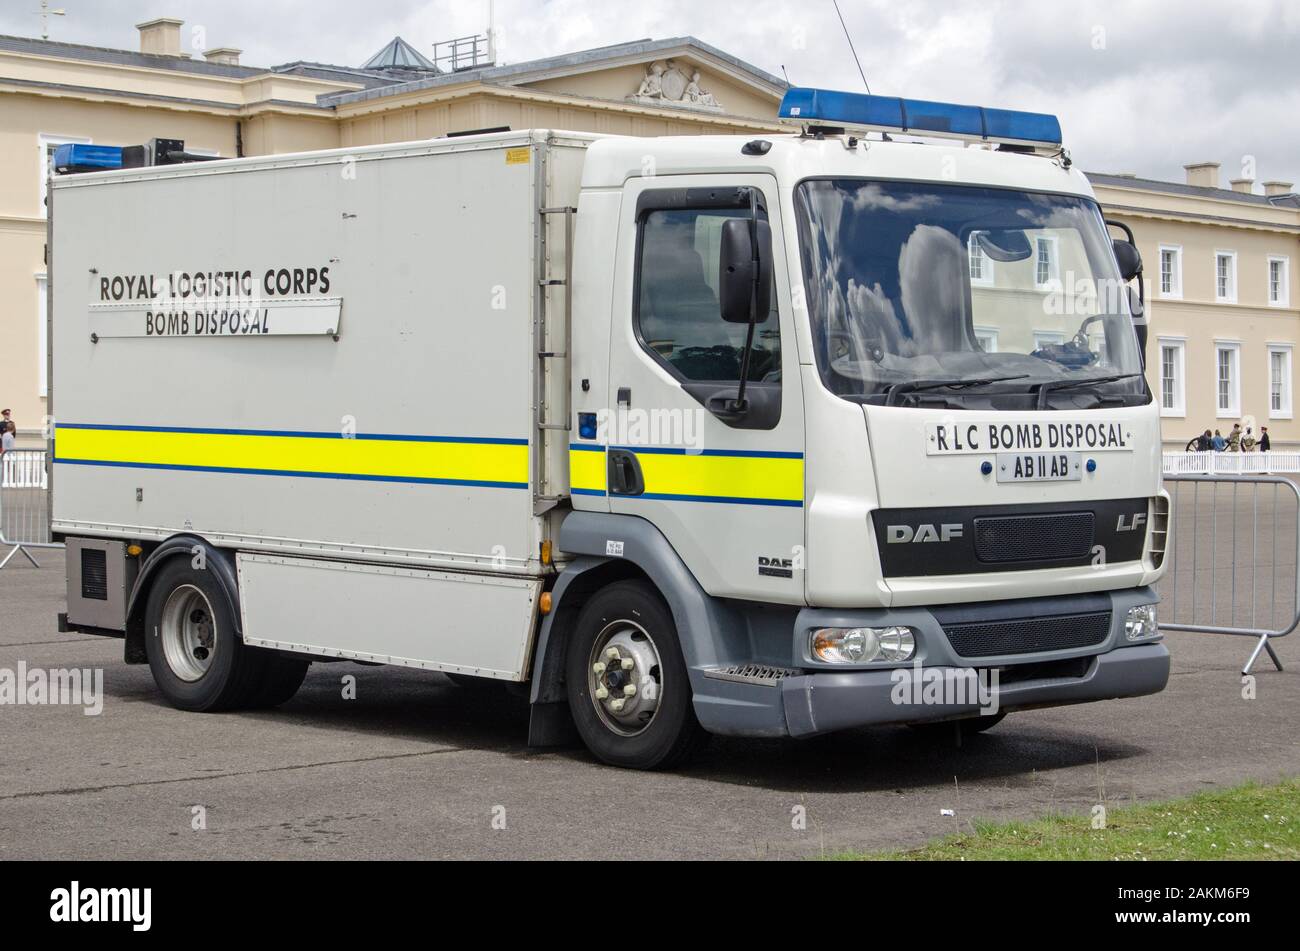 B-5573, Berkshire, UK - 16 juin 2019 : camion appartenant à l'équipe de neutralisation des bombes du Royal Logistic Corps stationnée sur l'affichage à Sandhurst Militar Banque D'Images